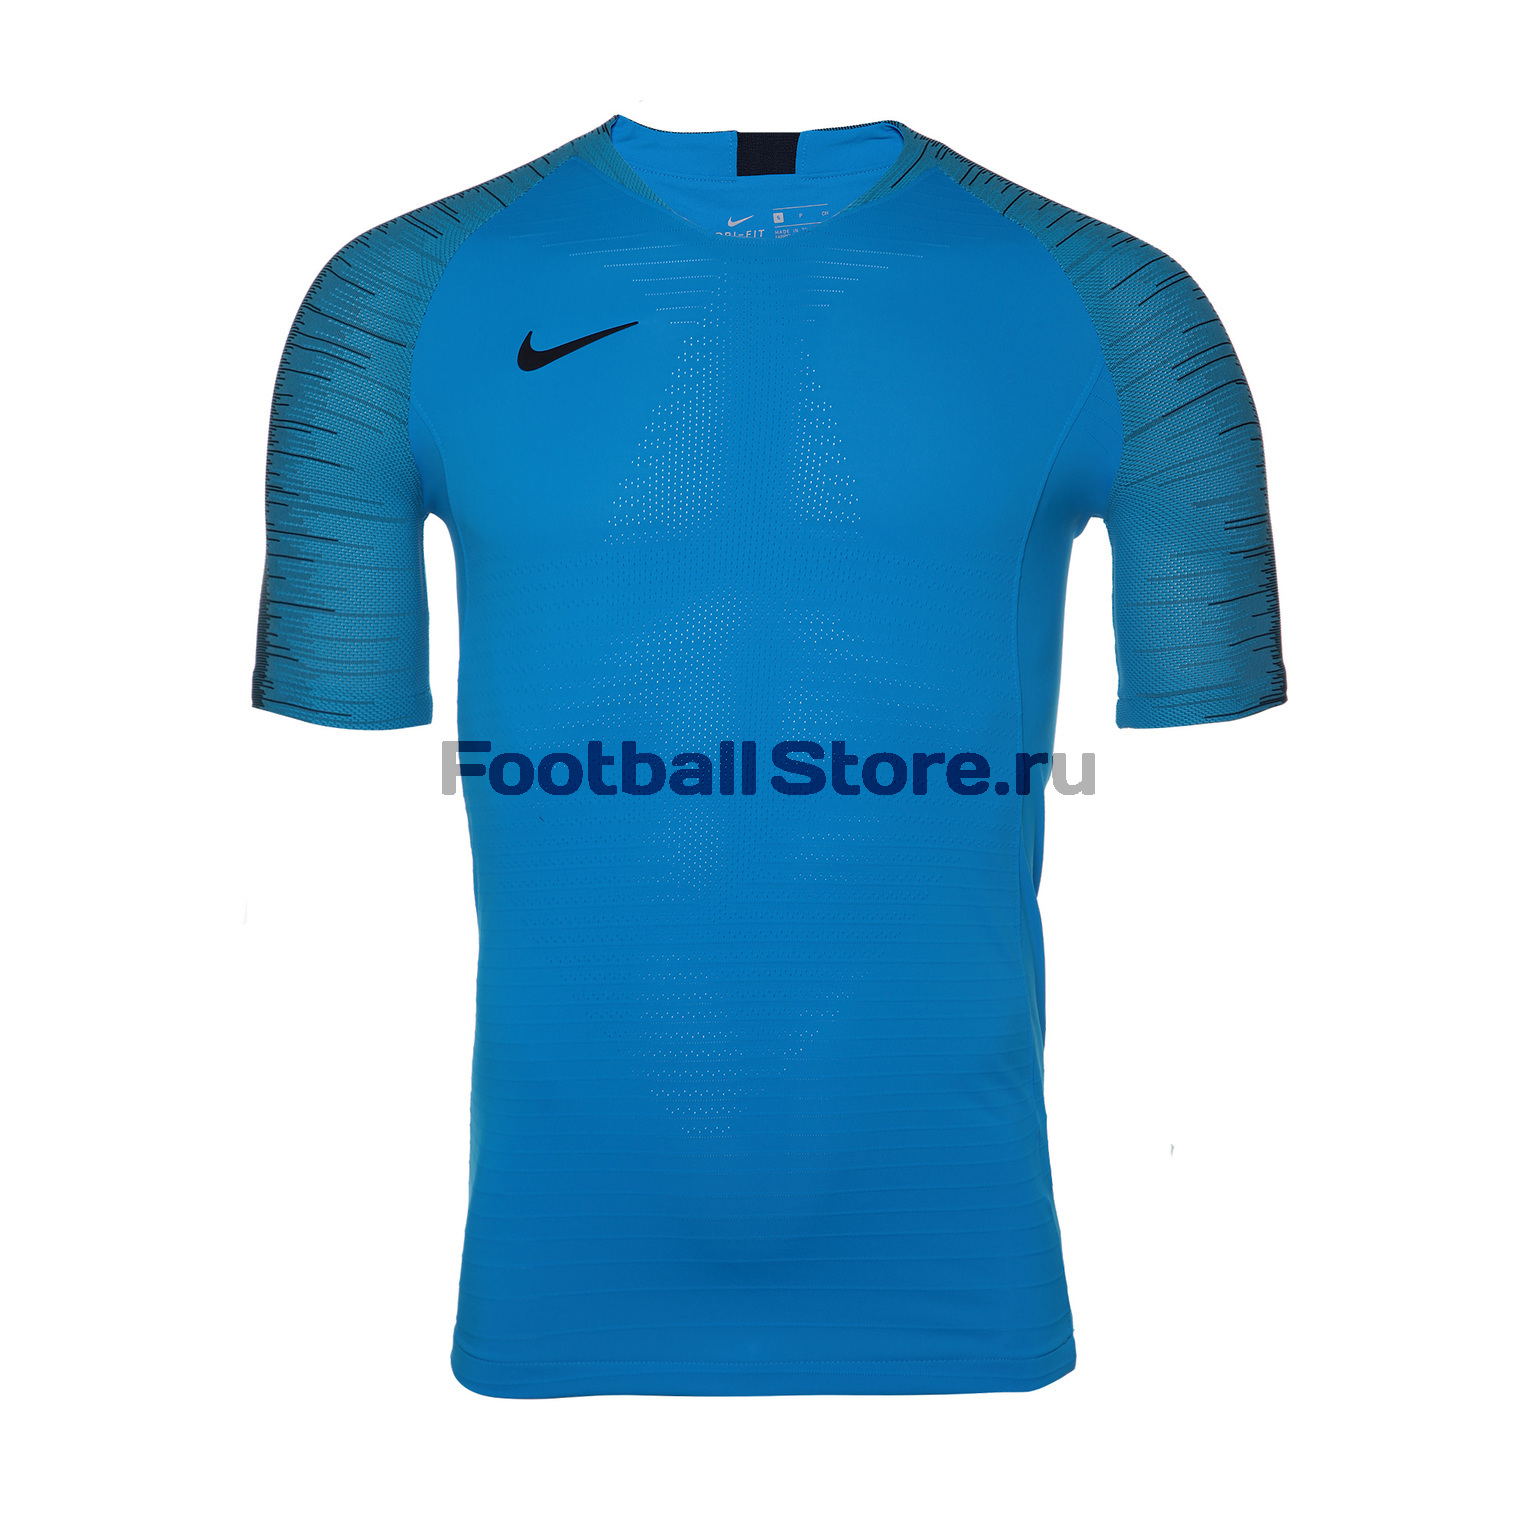 Футболка игровая Nike Vapor Strike Top 892887-469 